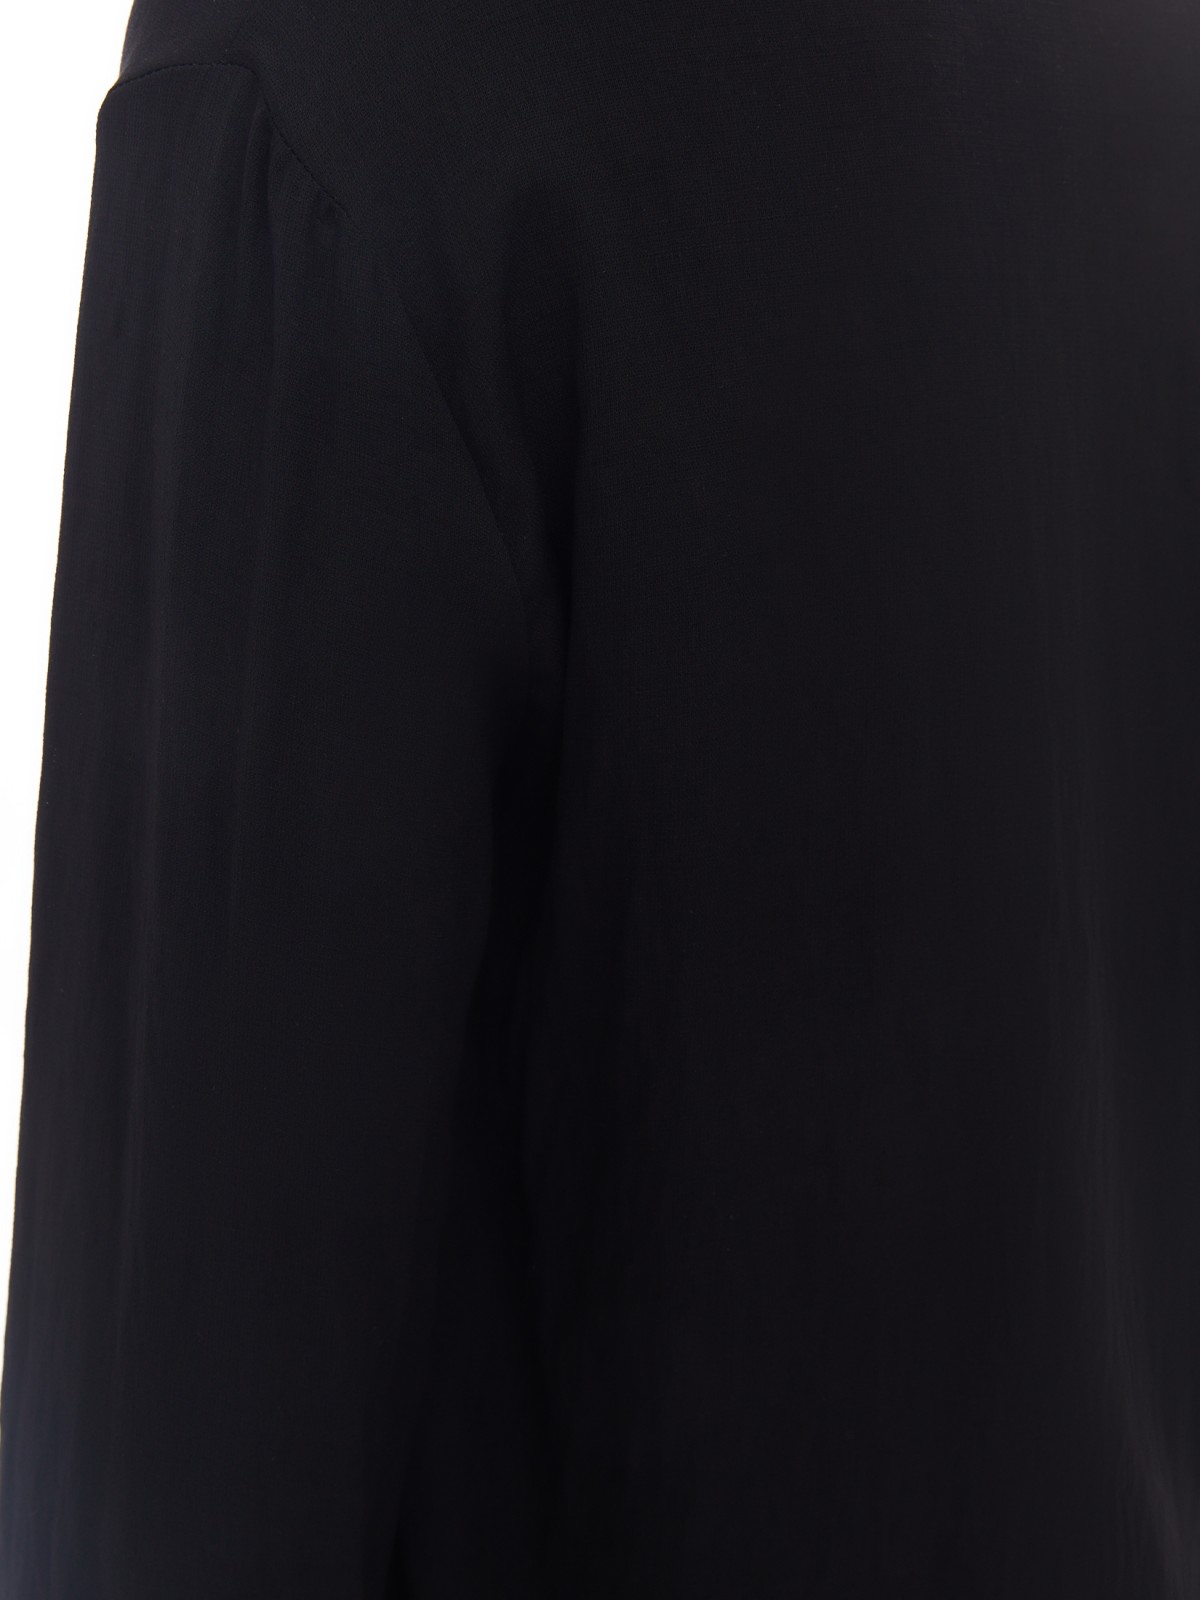 Блузка с вырезом и длинным рукавом zolla 02413117Y353, цвет черный, размер XS - фото 5